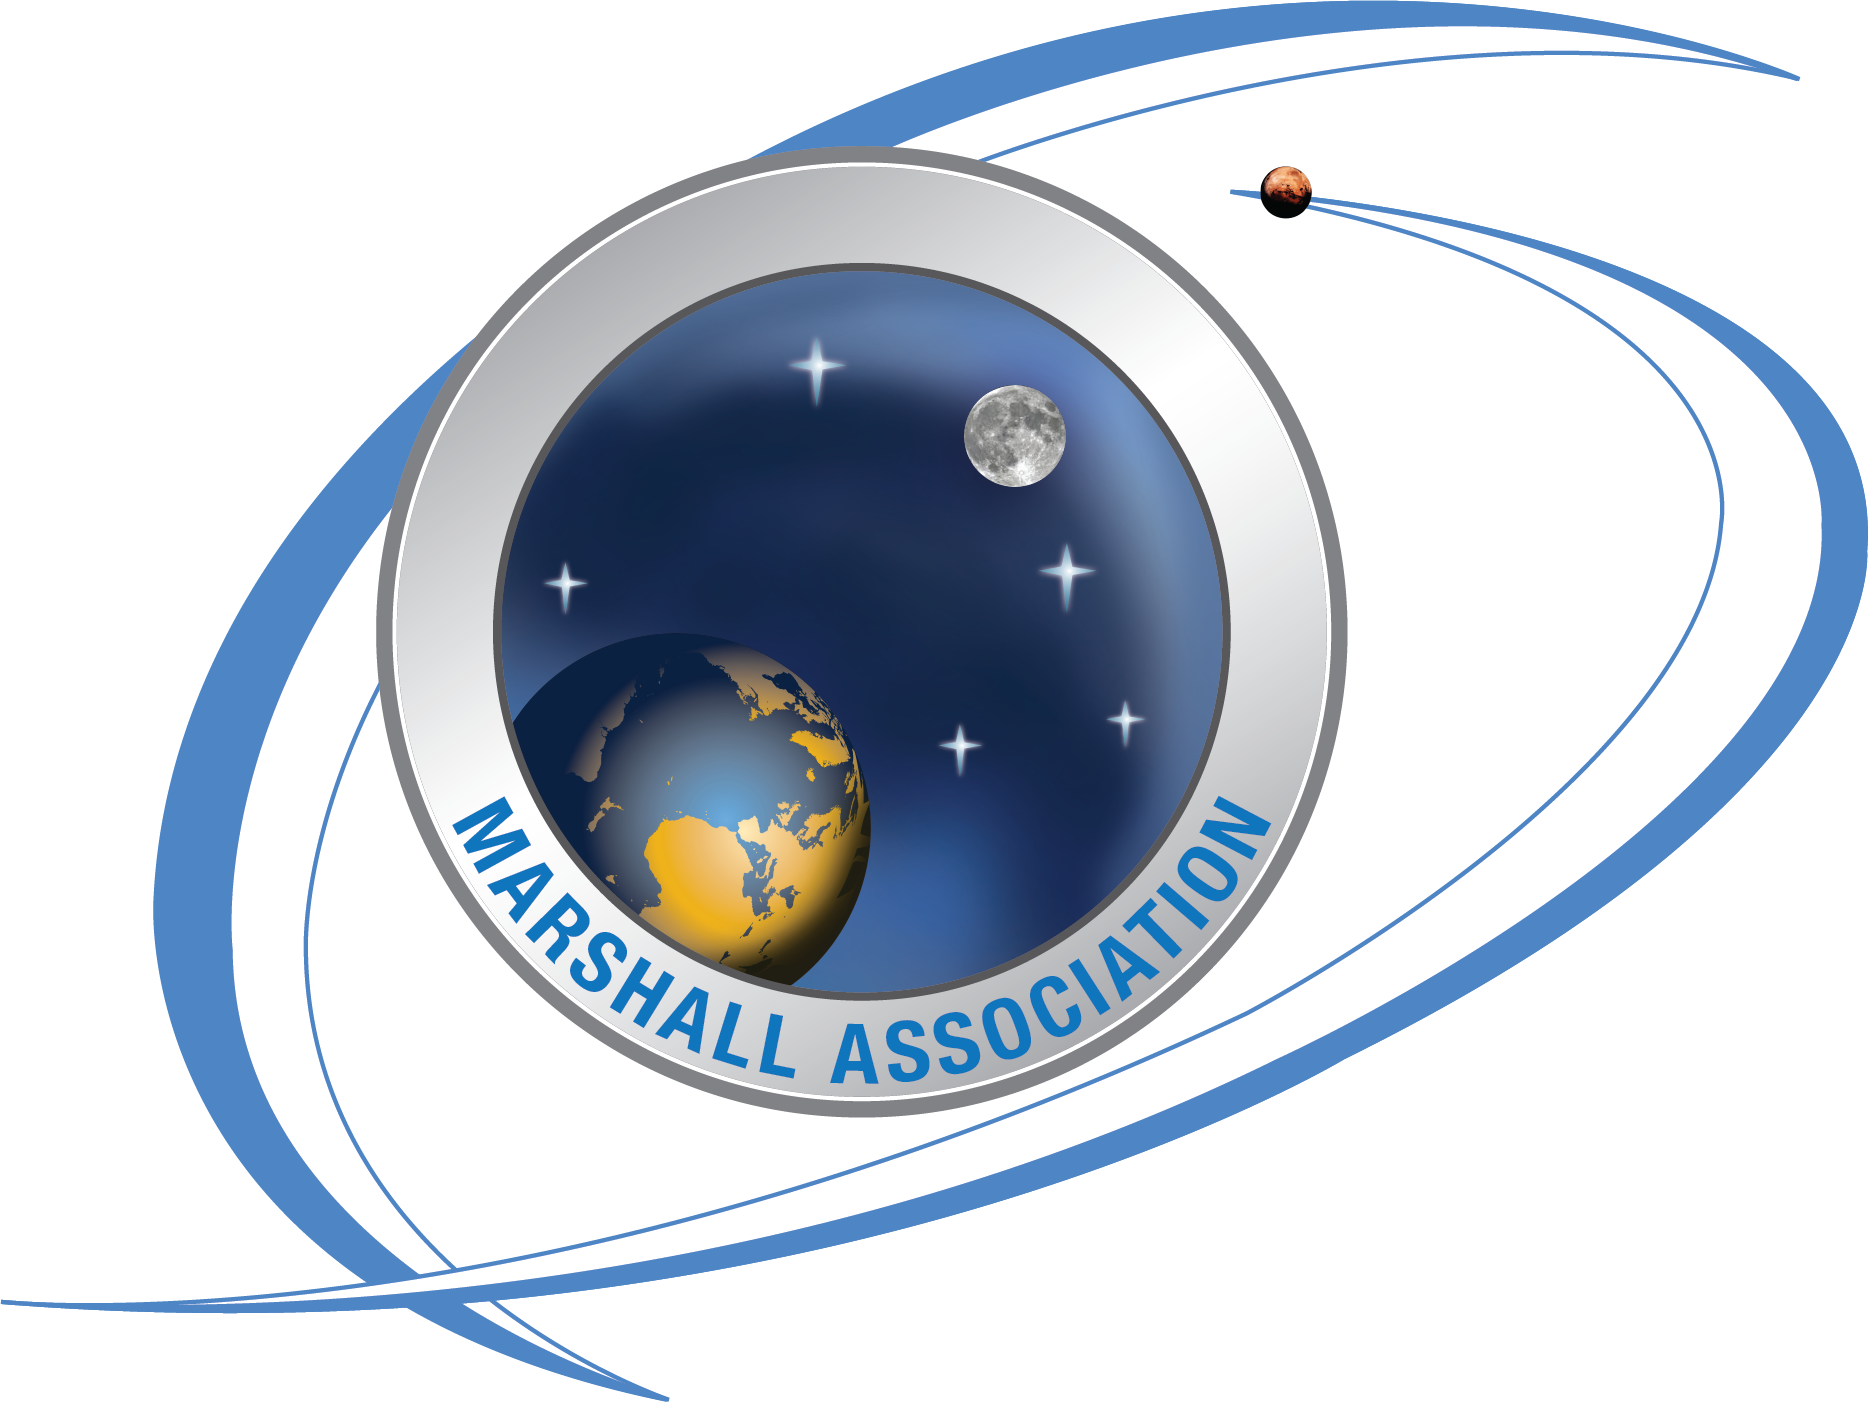 Marshall Association logo.